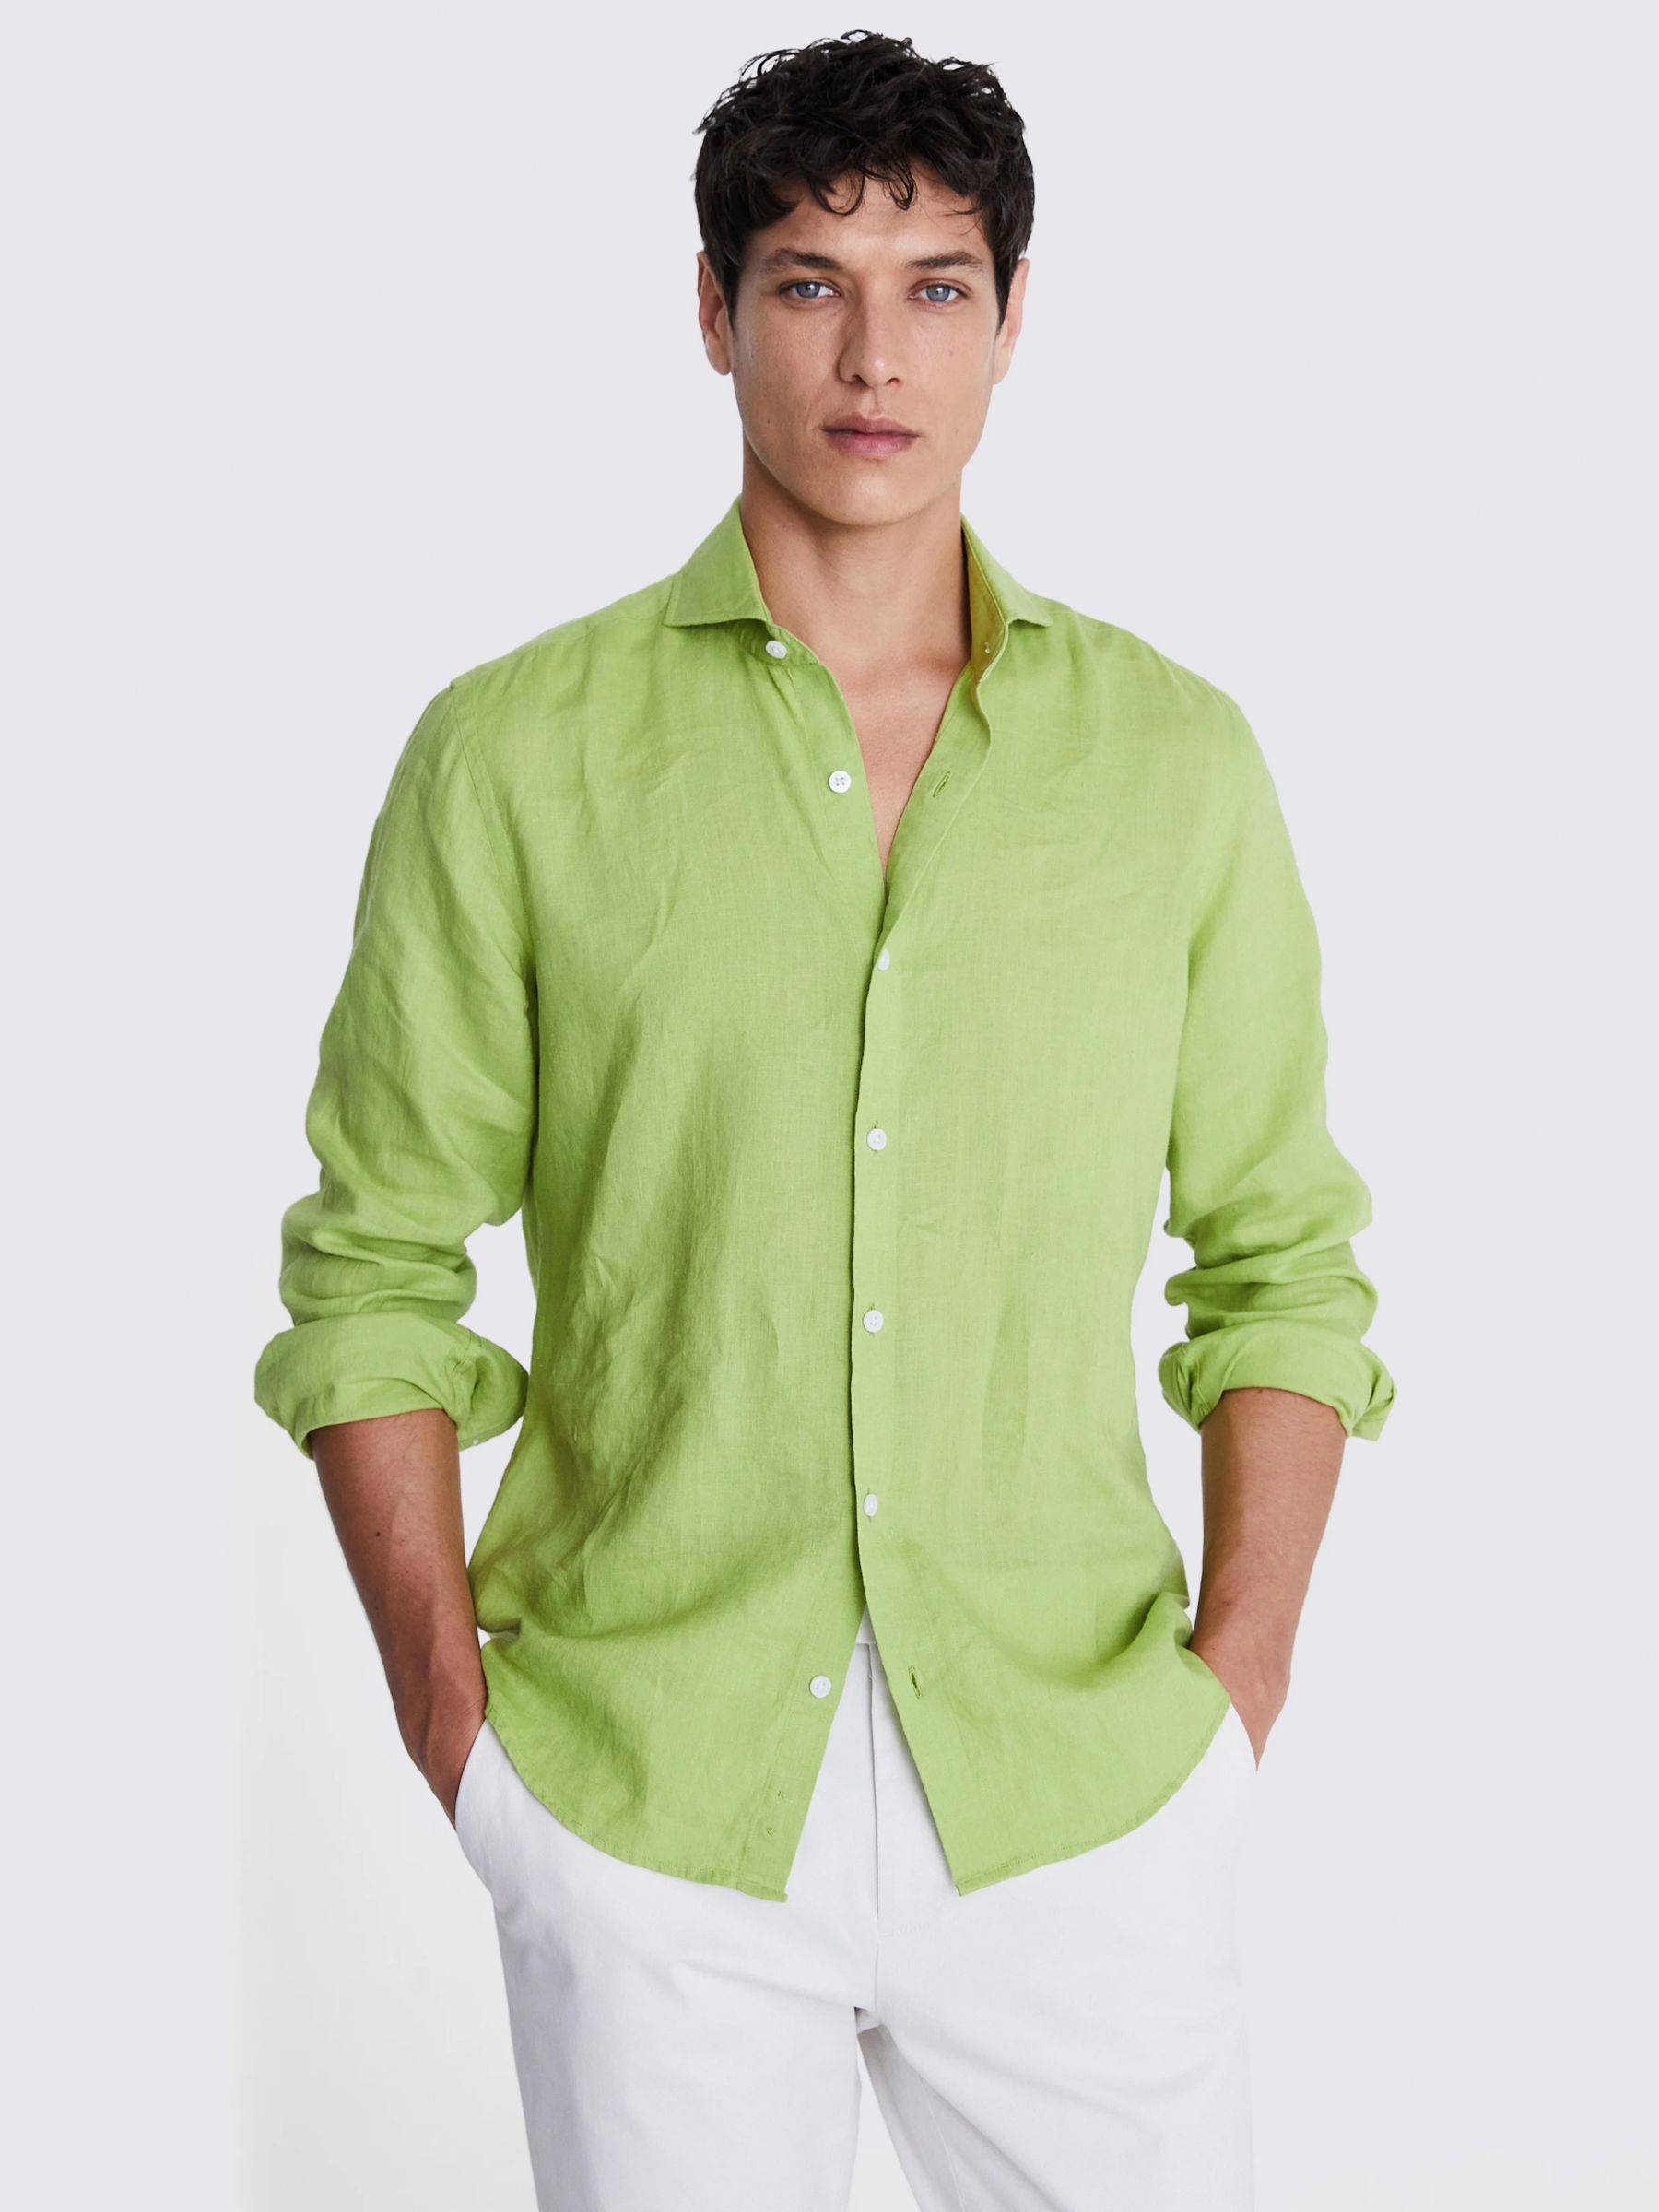 Moss Tailored Fit Linen Long Sleeve Shirt, Acid Green, S